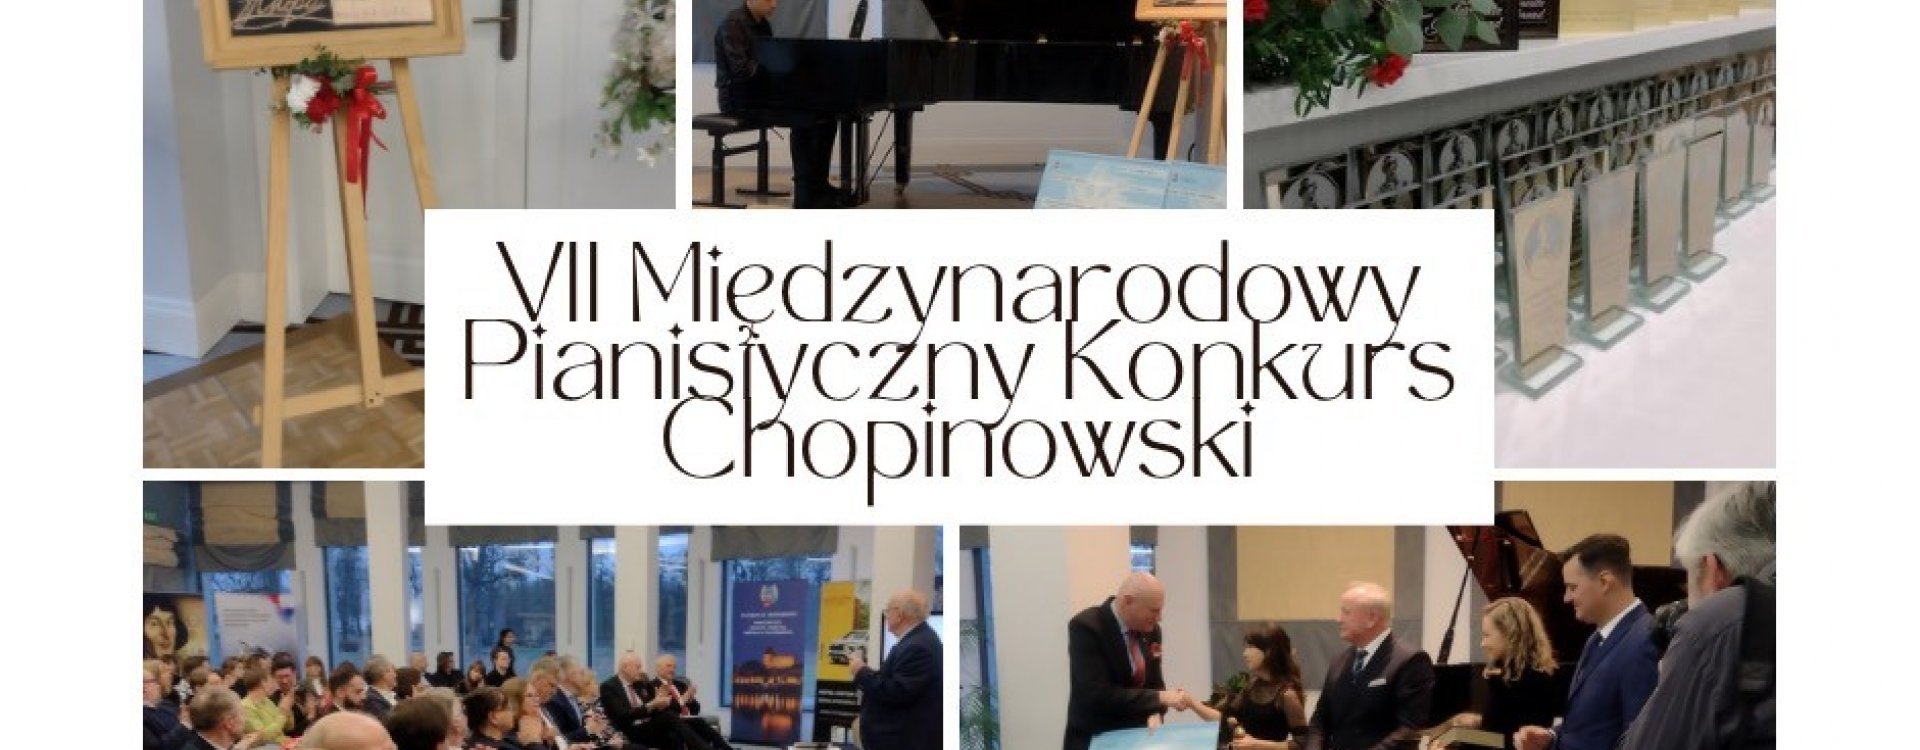 Podsumowanie VII Międzynarodowego Pianistycznego Konkursu Chopinowskiego